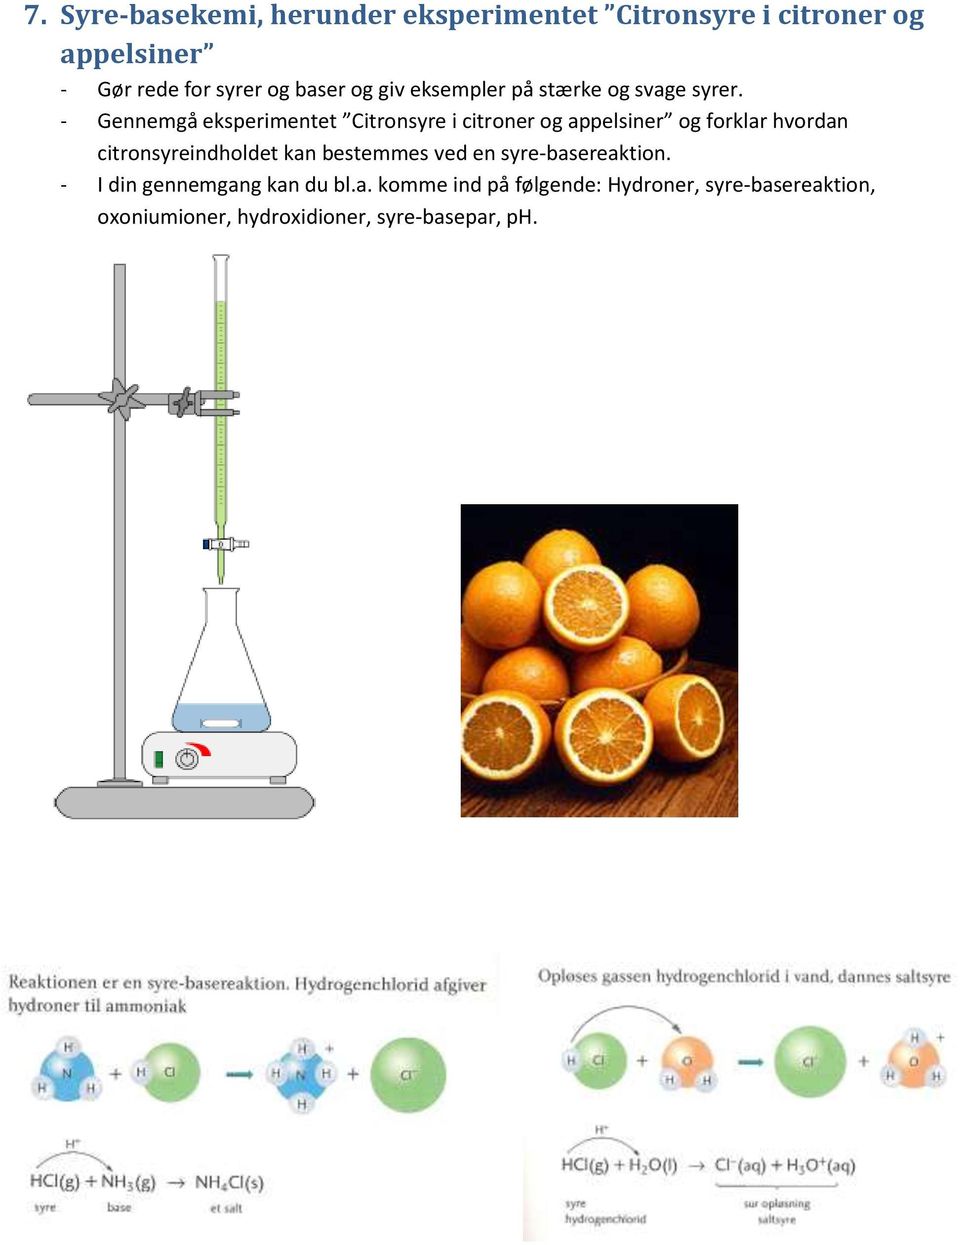 - Gennemgå eksperimentet Citronsyre i citroner og appelsiner og forklar hvordan citronsyreindholdet kan